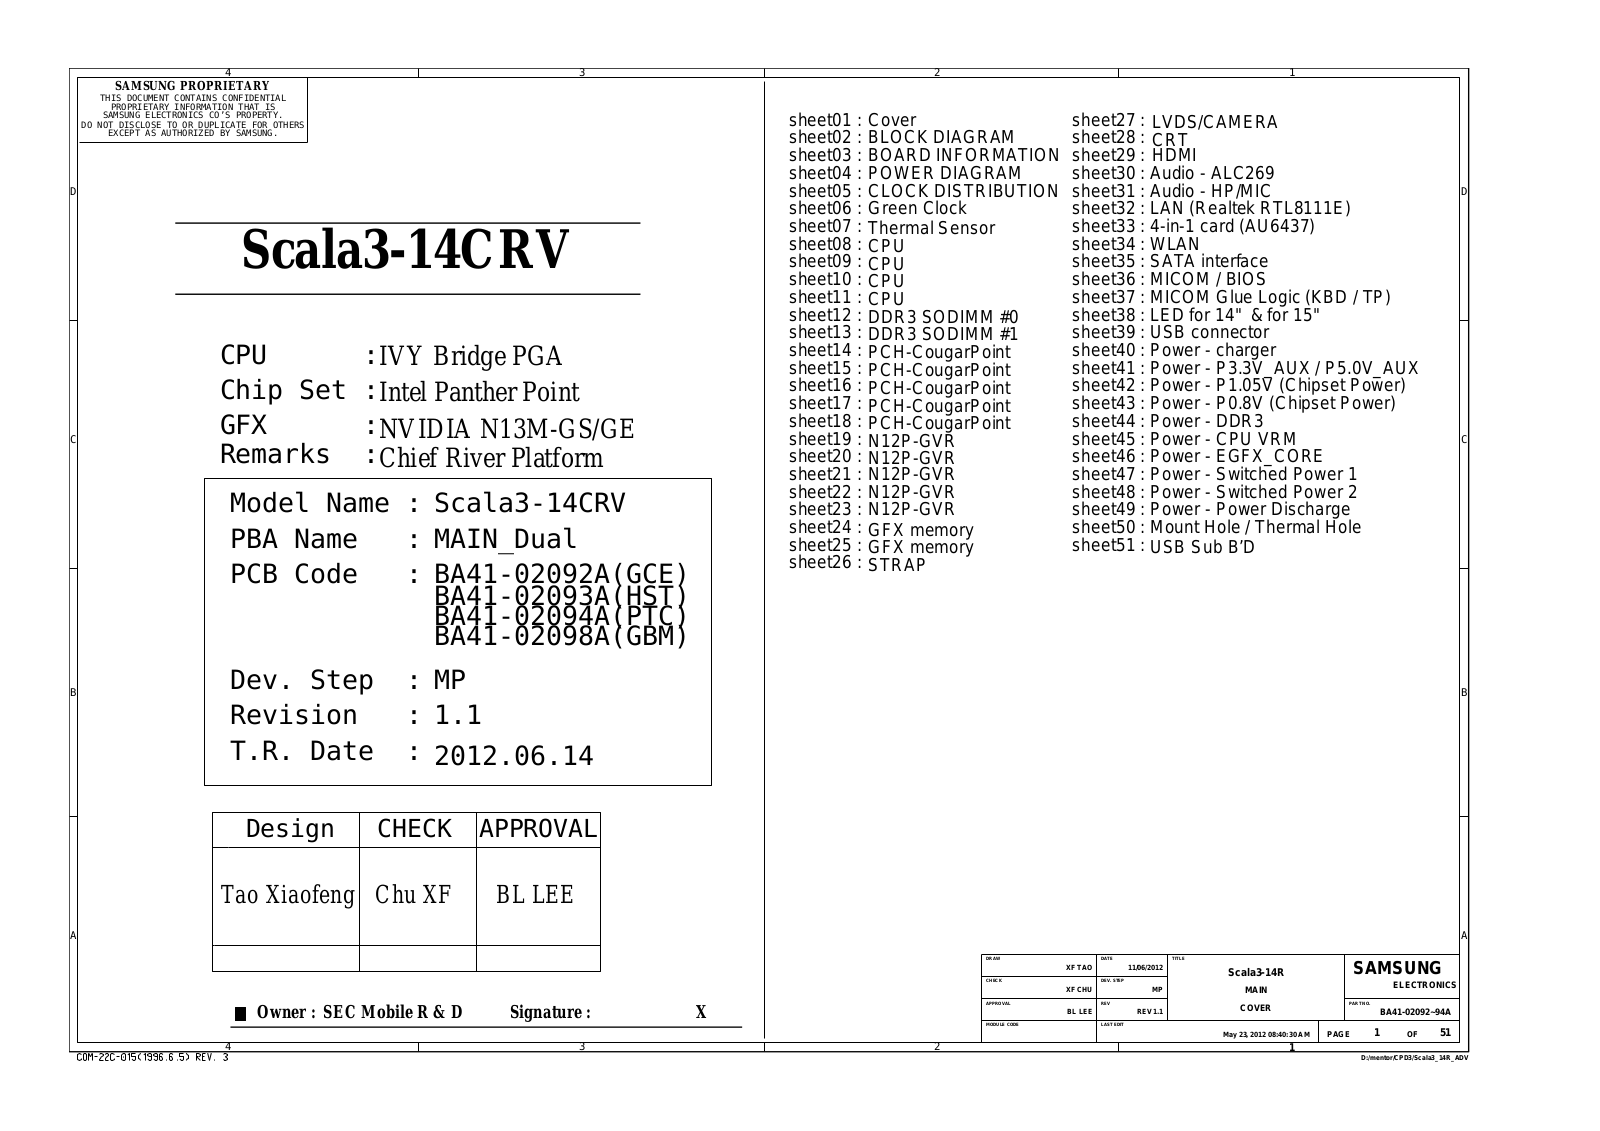 Samsung Scala3-14CRV Schematic